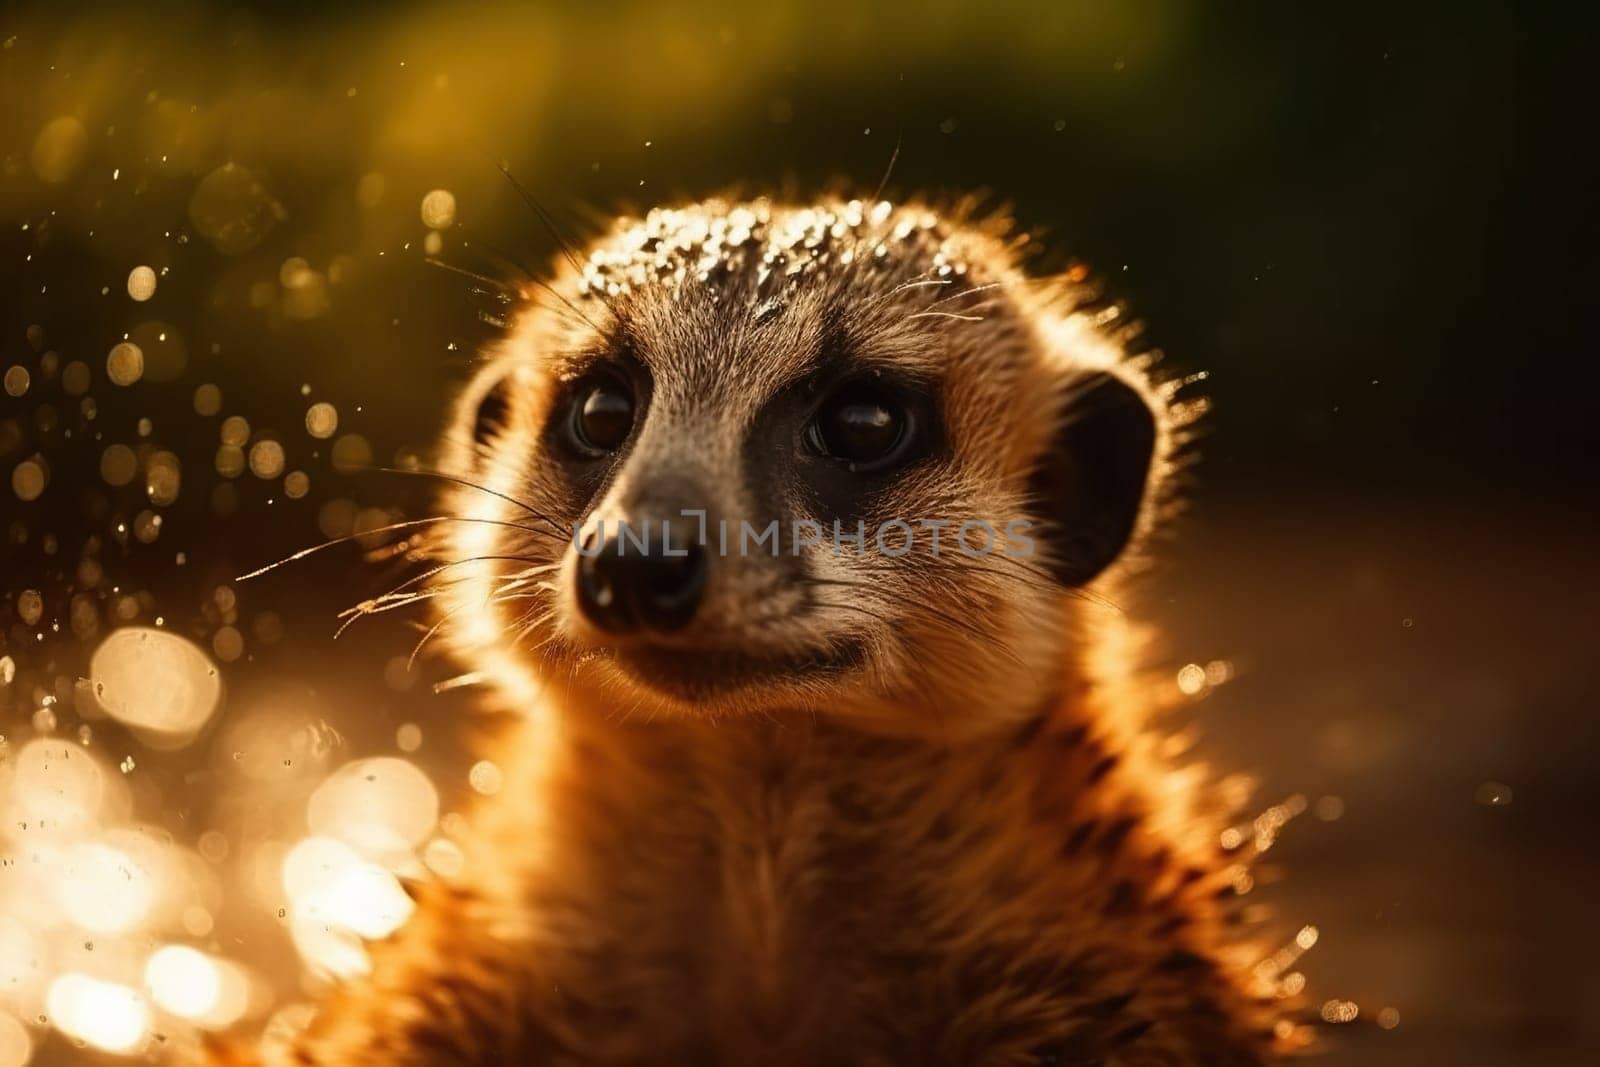 Portrait Of Cute Meerkat Close-up by GekaSkr